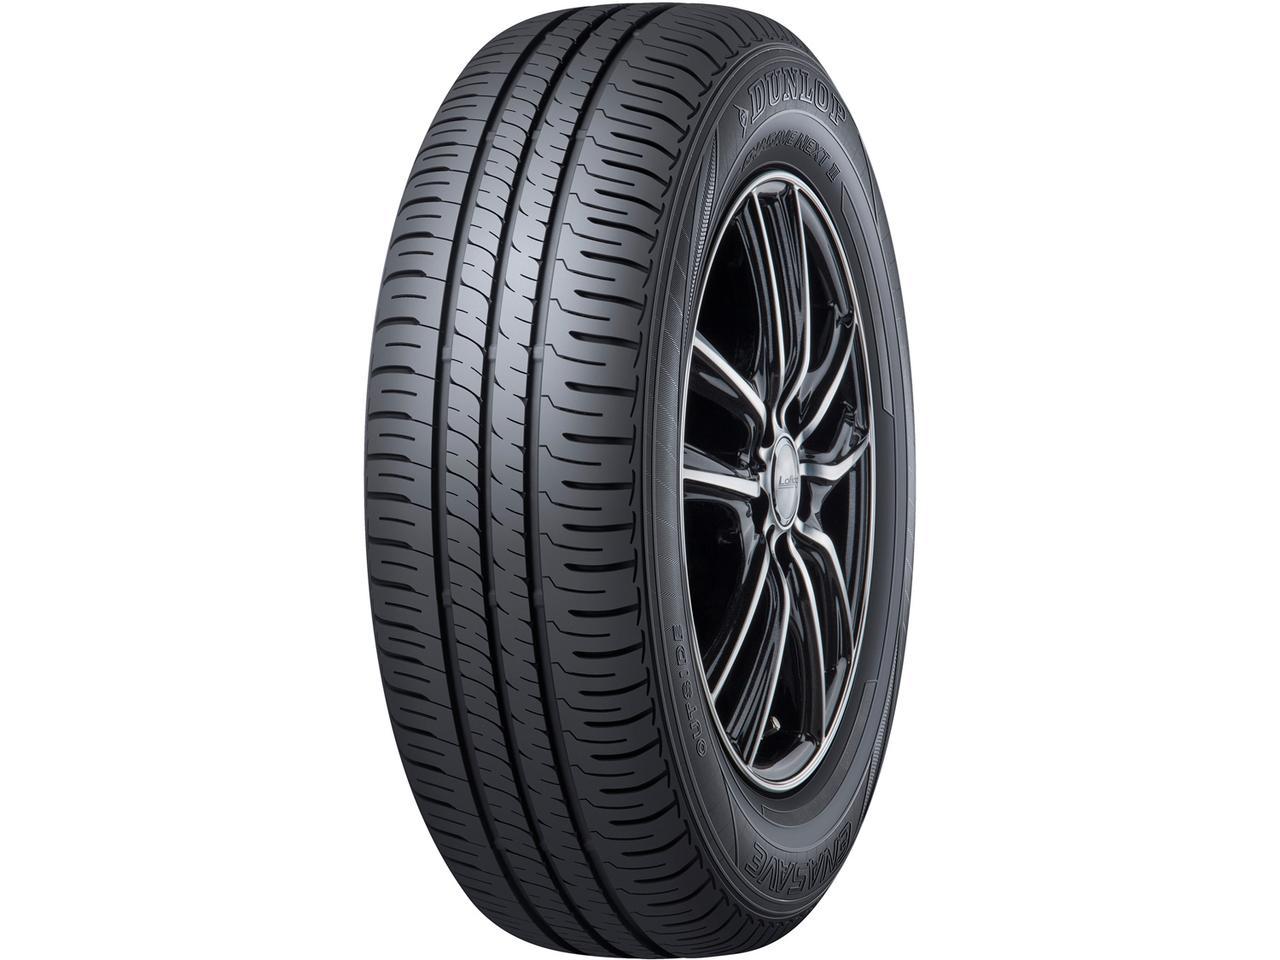 ダンロップがエナセーブ ネクストIIIを発売。性能を維持する新素材を採用した低燃費タイヤ